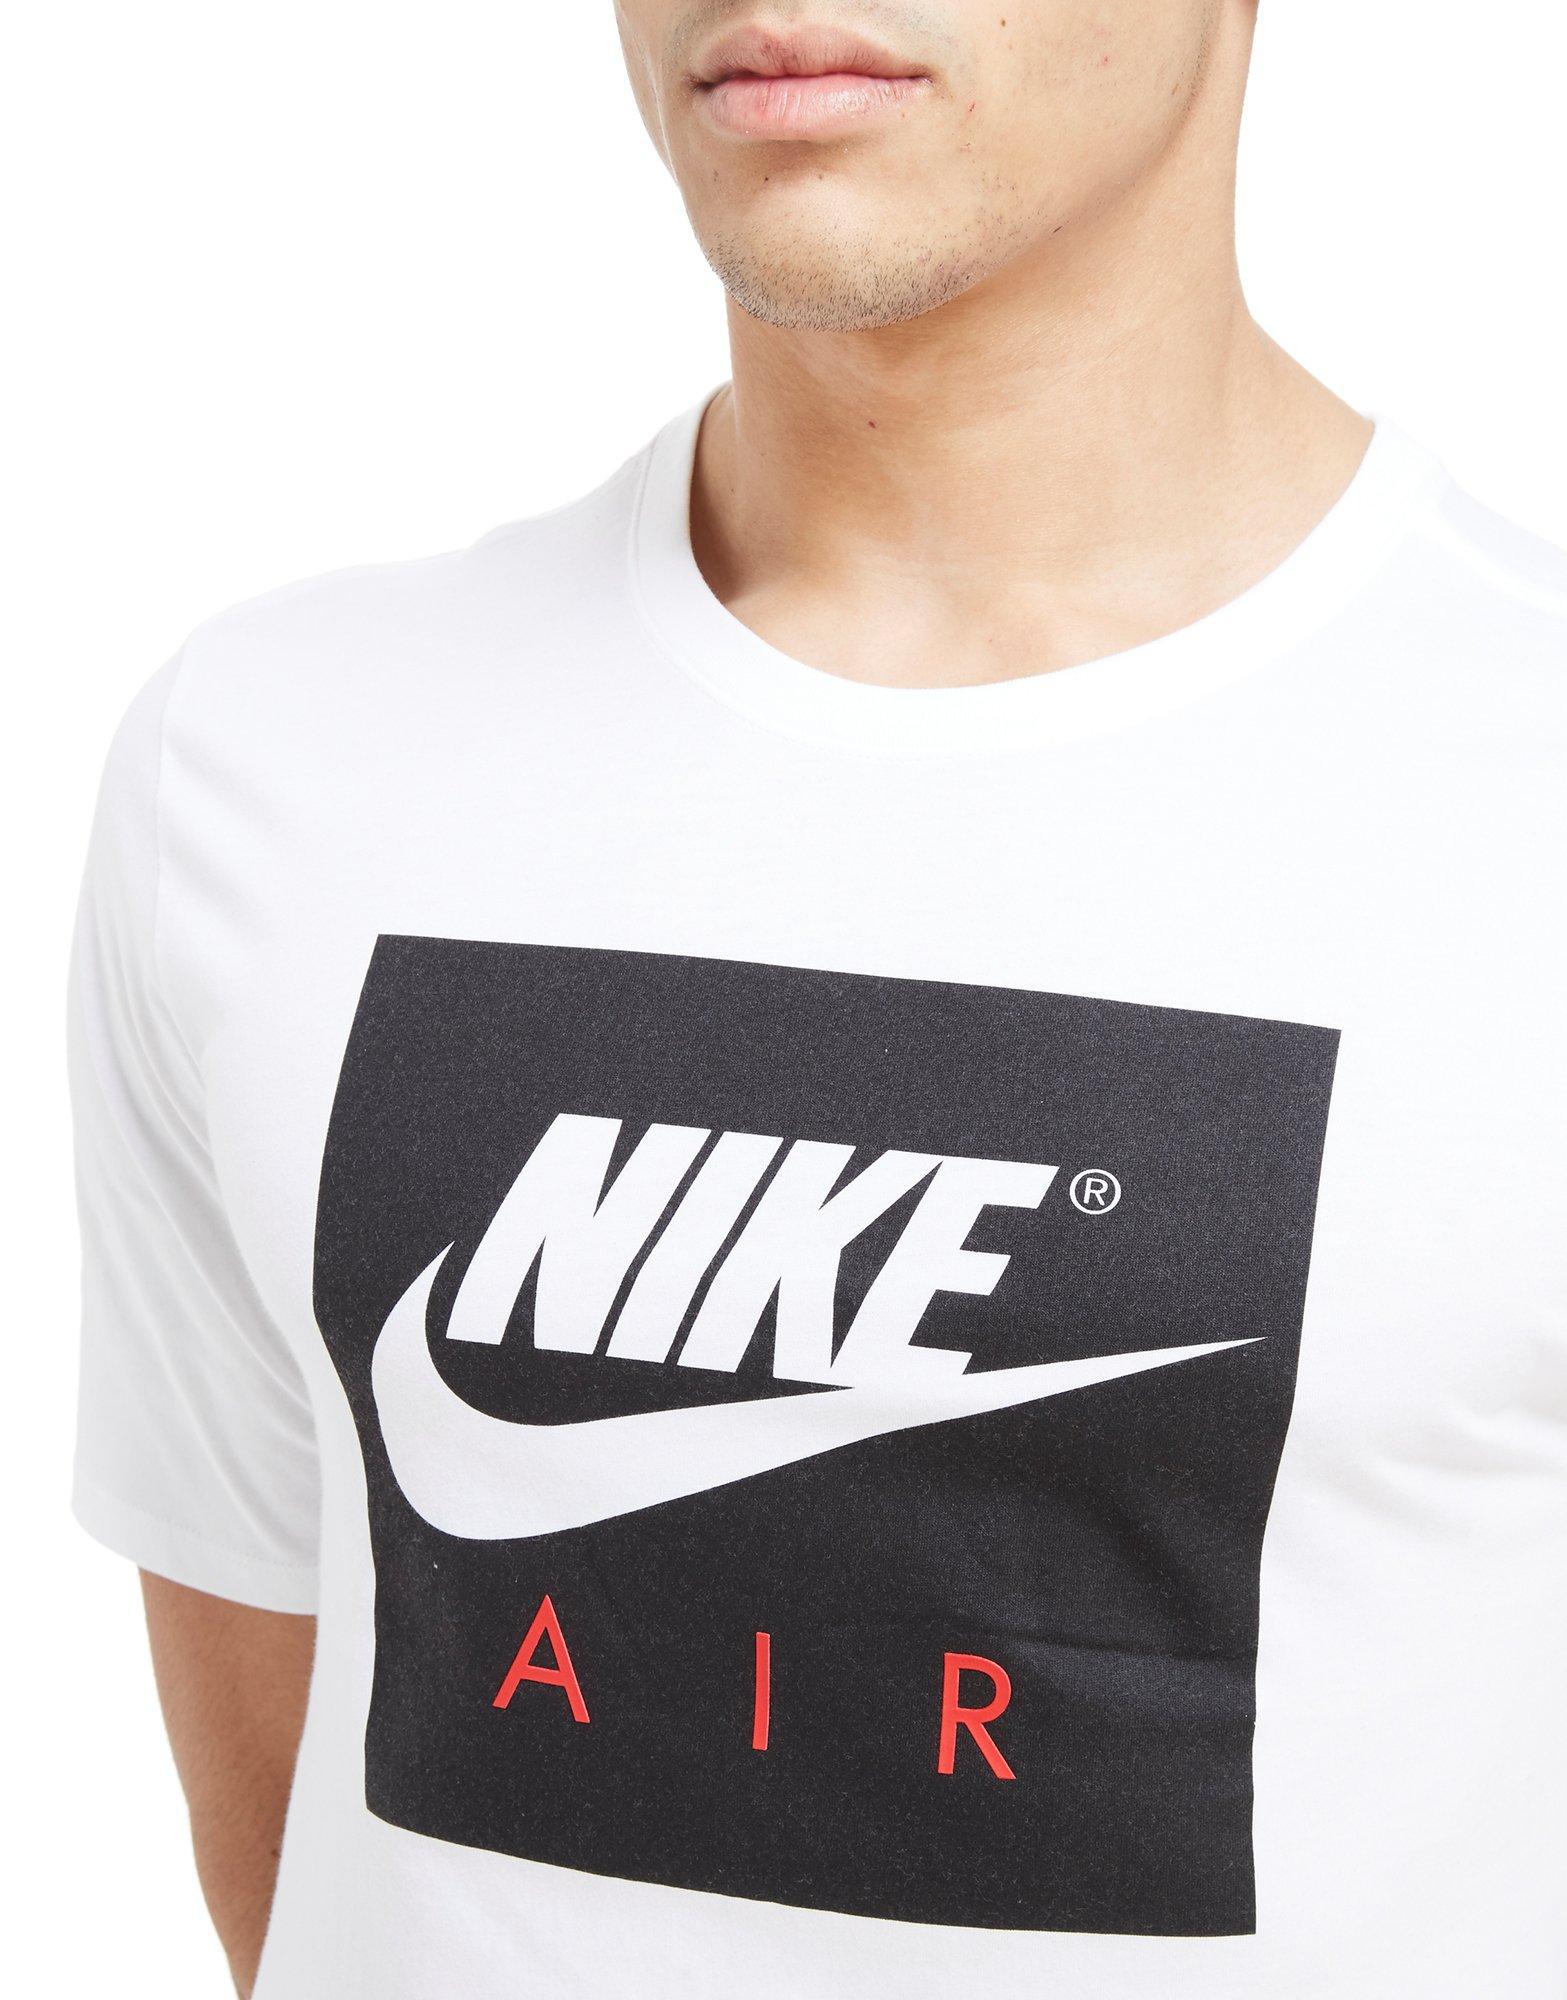 nike air box logo t shirt